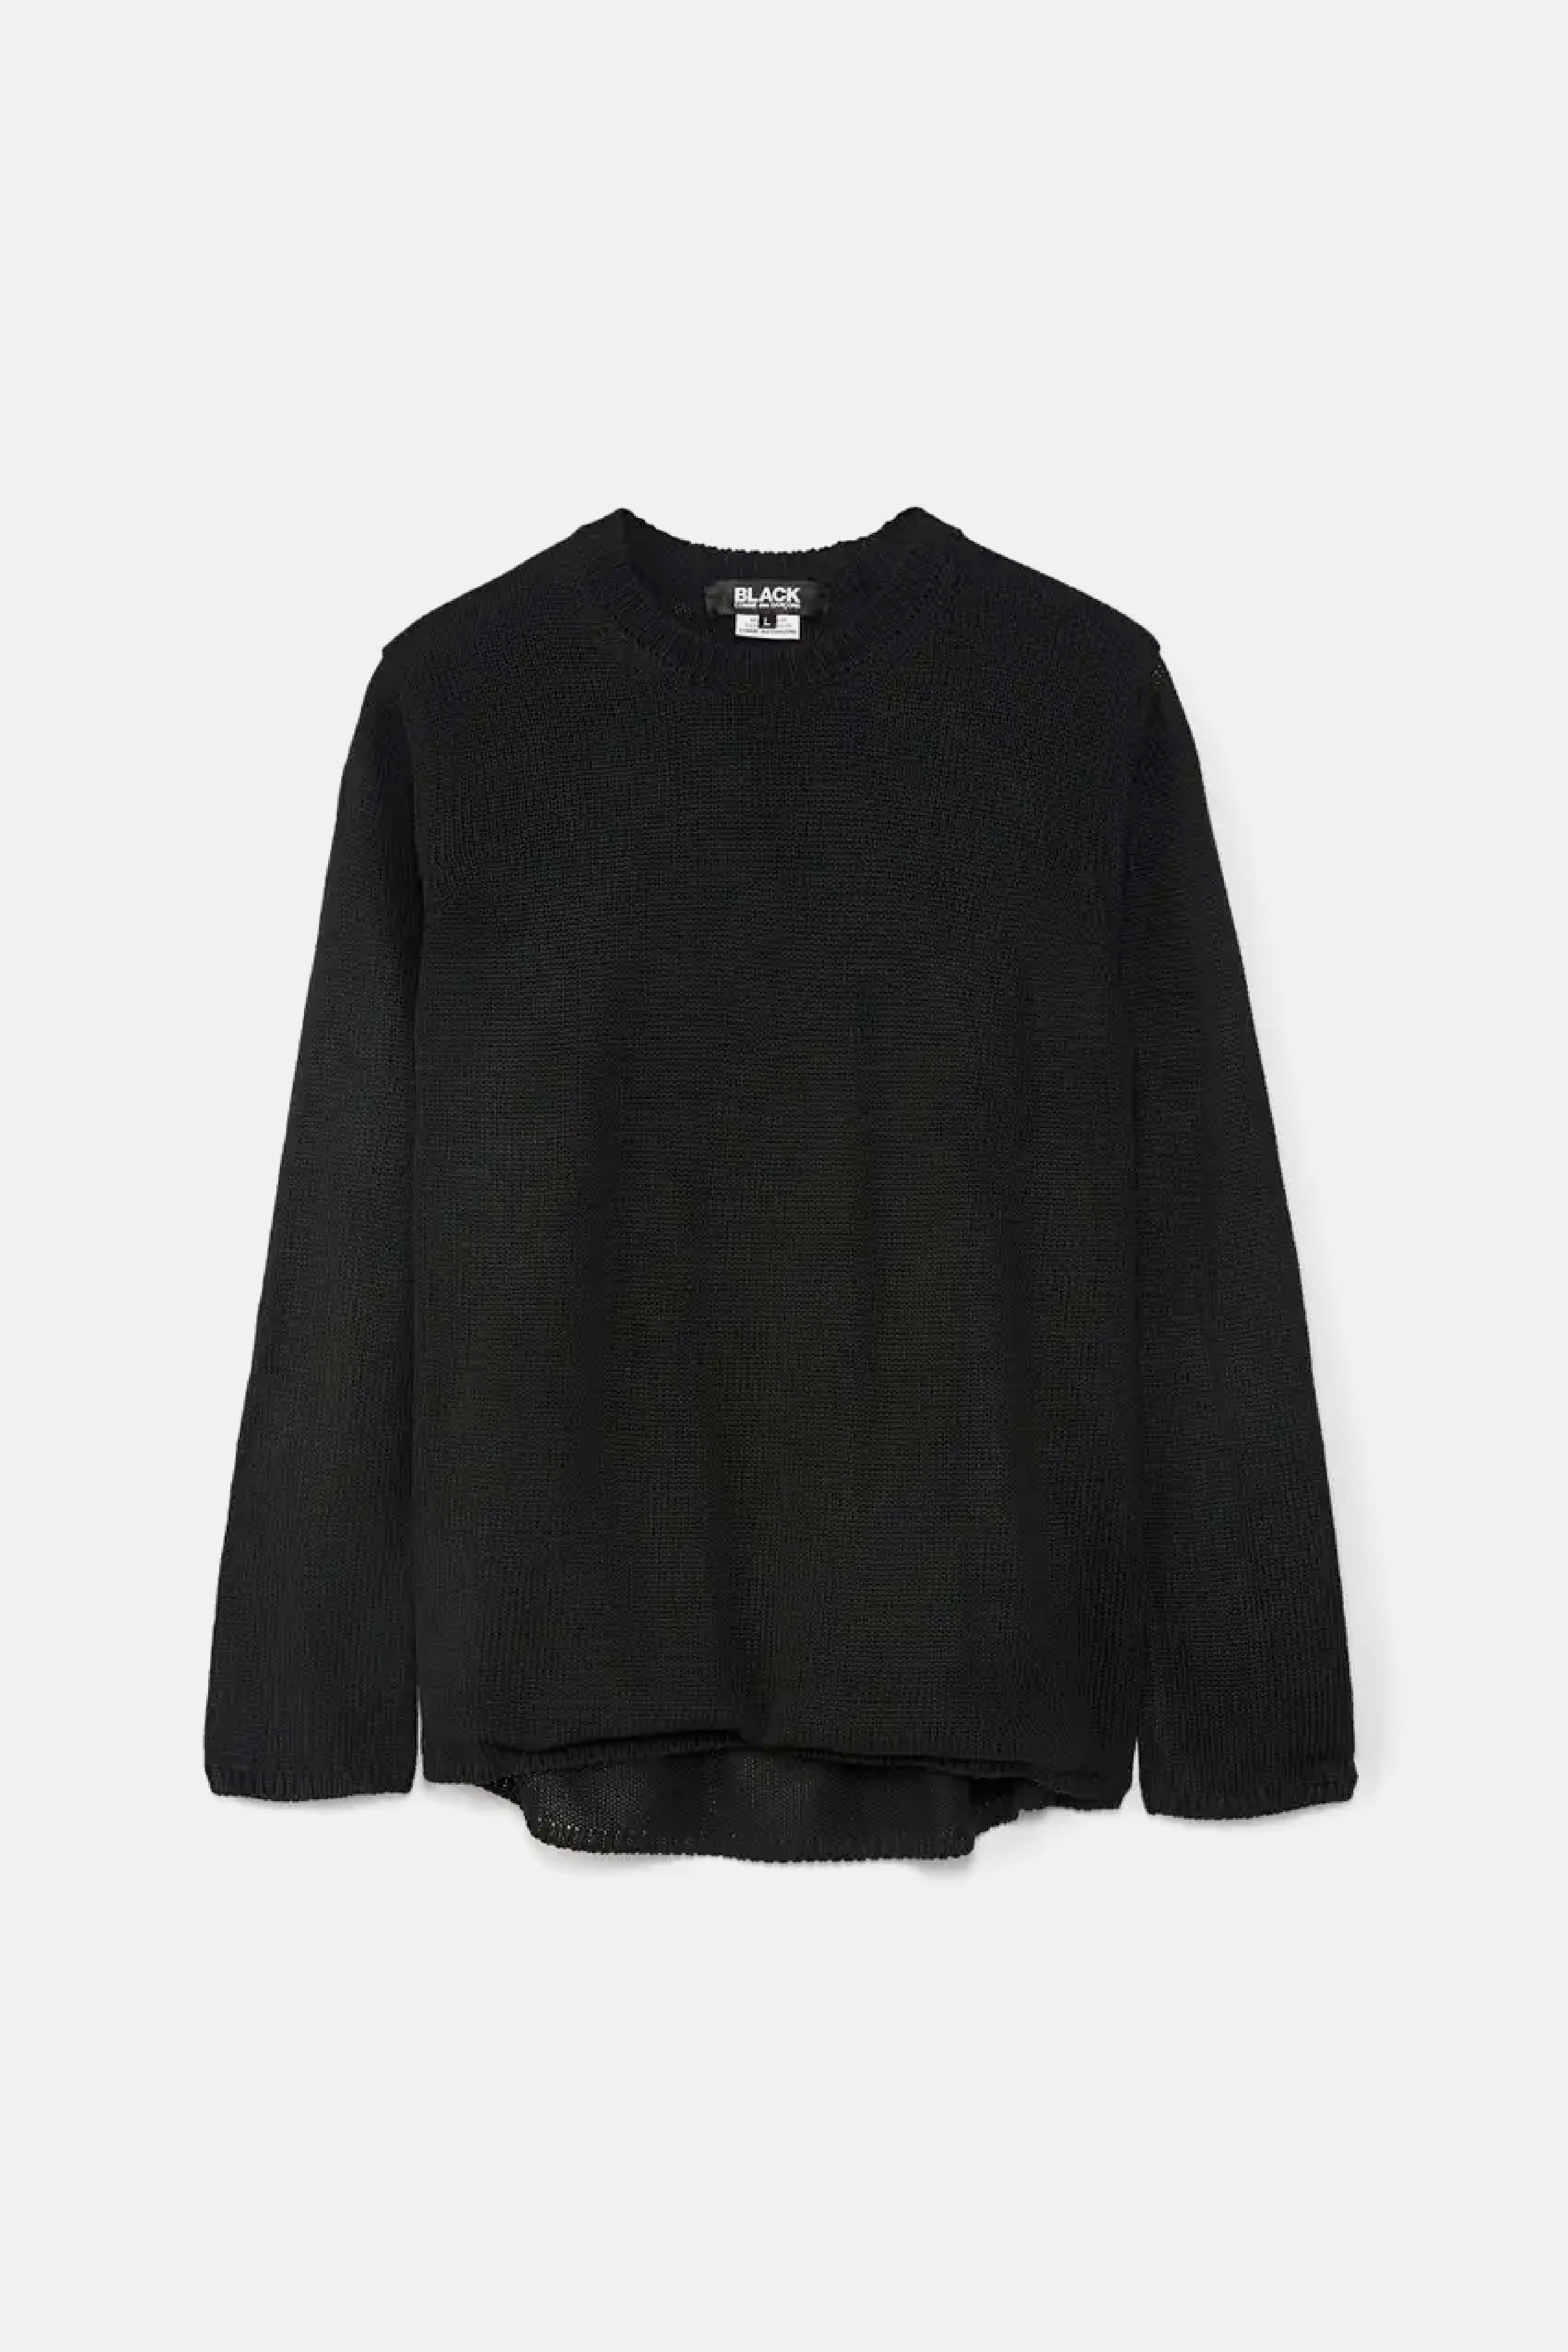 Selectshop FRAME - COMME DES GARÇONS BLACK Unisex Sweater Sweats-Knits Dubai